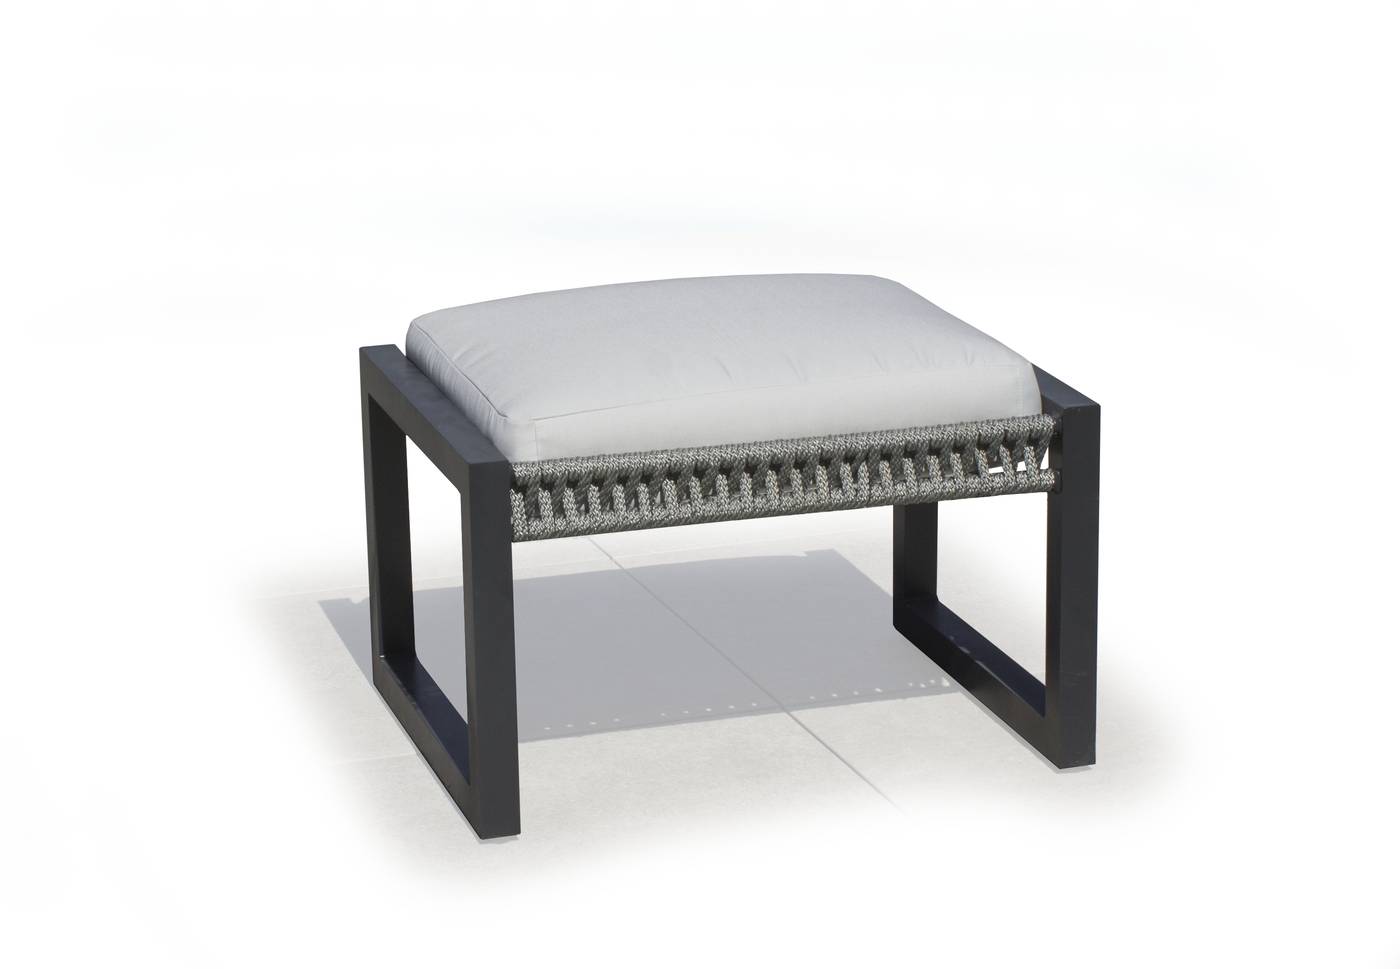 Set Aluminio Bolonia-870 - Conjunto aluminio y cuerda: 1 sofá de 2 plazas + 2 sillones + 1 mesa de centro. Respaldos reclinables. Colores: blanco, gris, marrón o champagne.